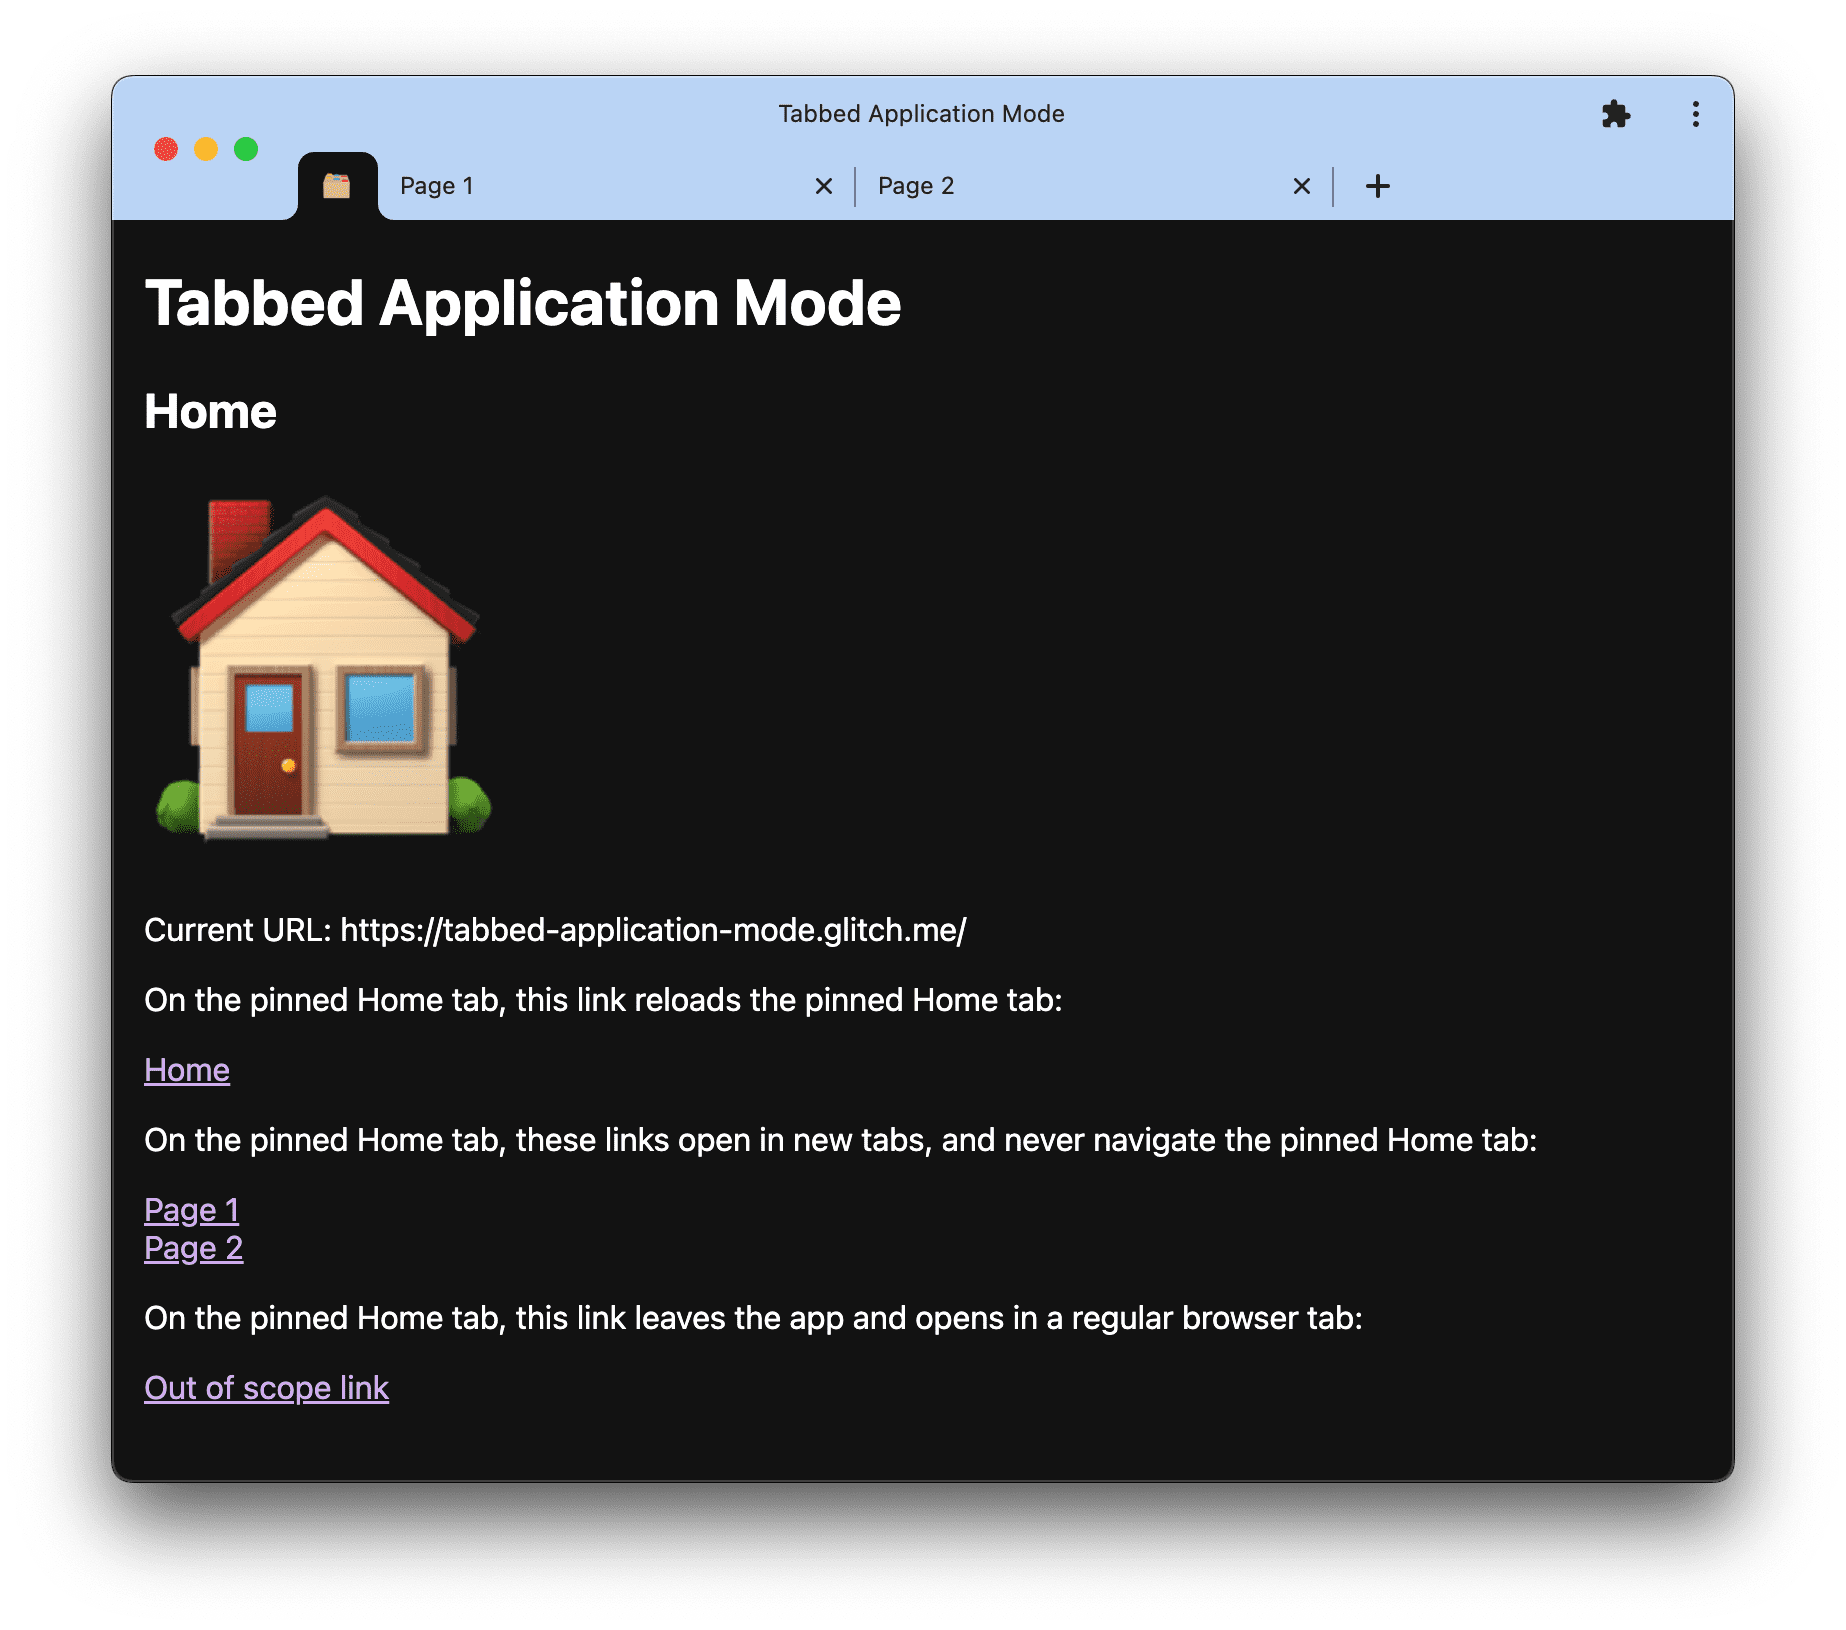 Zrzut ekranu pokazujący tryb aplikacji z kartami dostępny w pliku tabbed-application-mode.glitch.me.